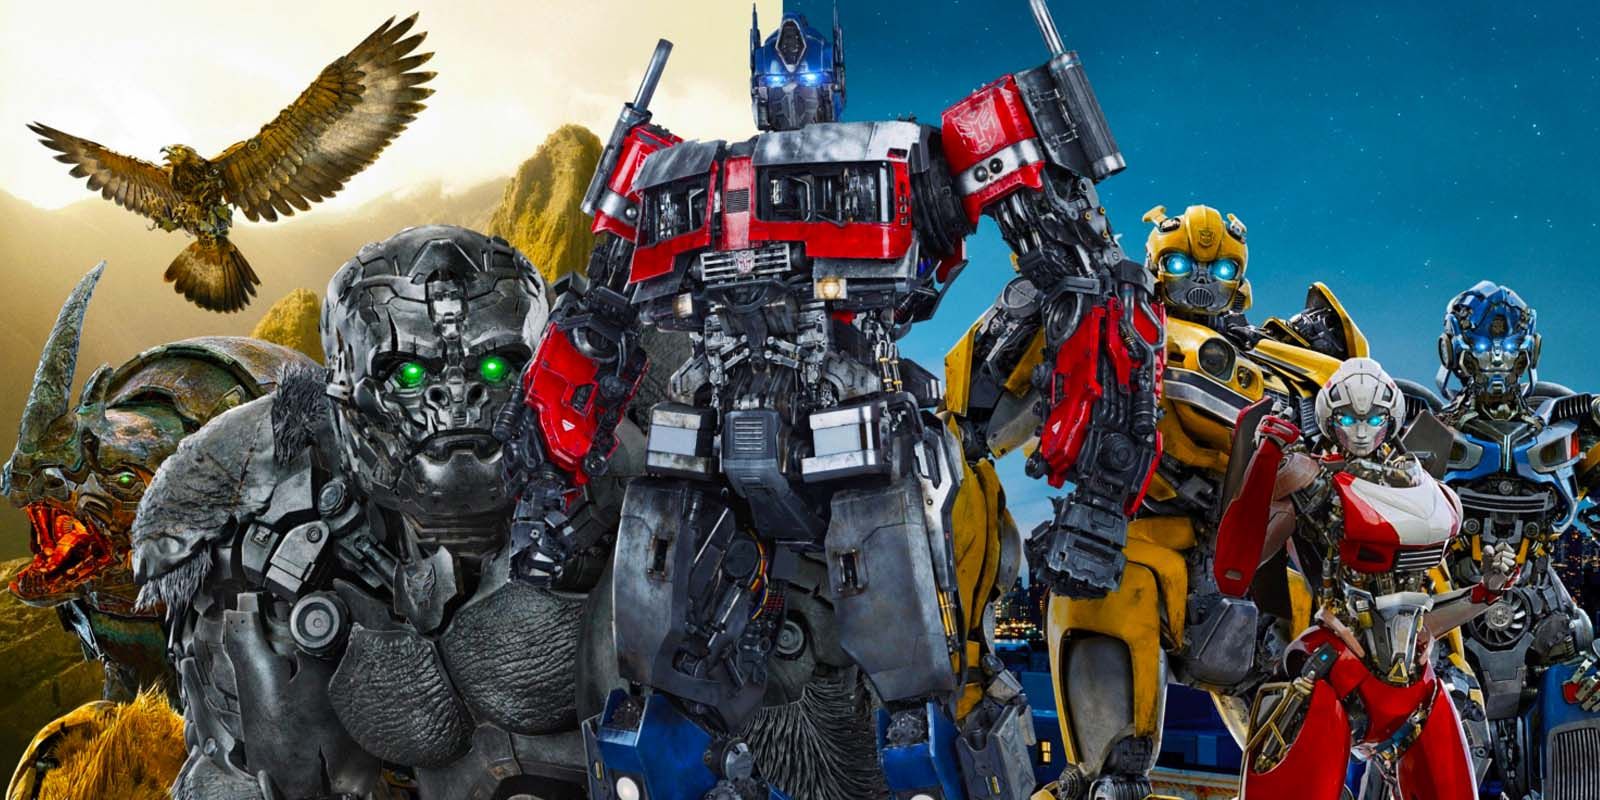 Rise of the Beasts vinh danh diễn viên lồng tiếng của Optimus Prime theo cách kỳ lạ nhất